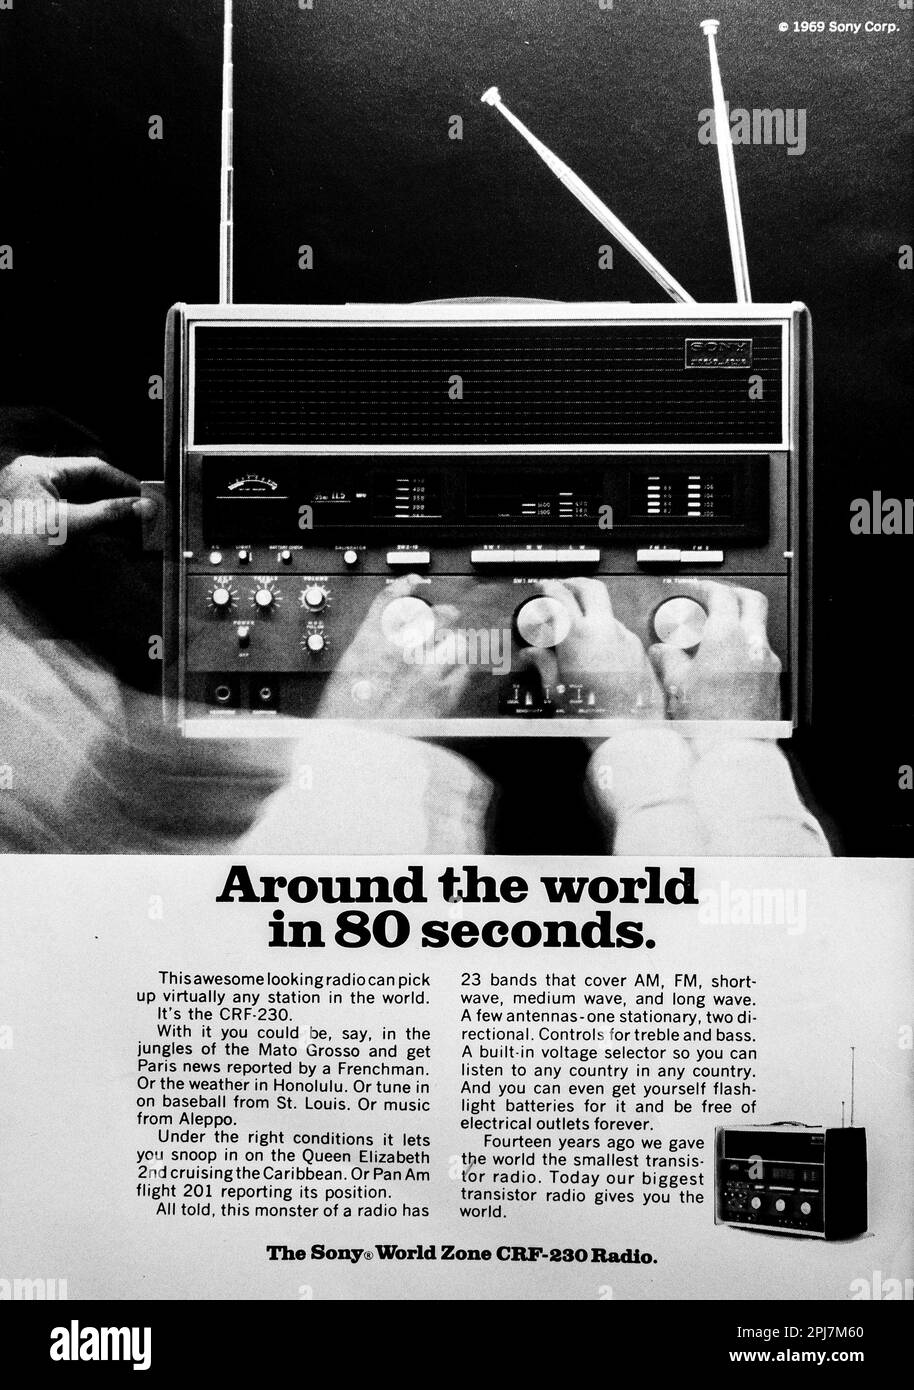 Sony SRF-230 radio advert in a Natgeo magazine, August 1969 Stock Photo